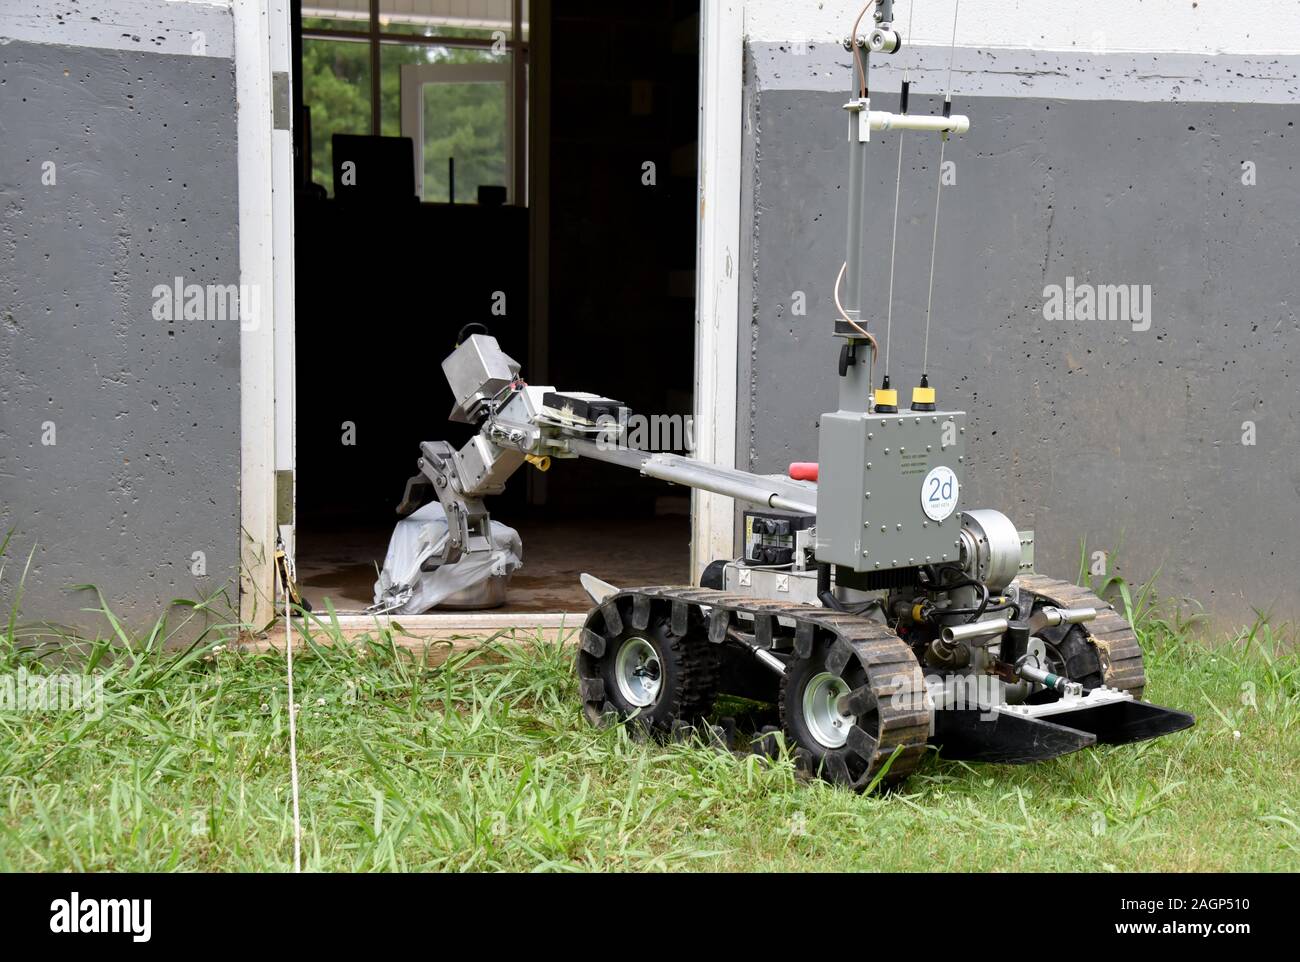 Un spécialiste de l'enlèvement du FBI exploite une bombe de contrôle à  distance du robot. Aux États-Unis, les attentats à la bombe sont a répondu  à l'enquête et par le FBI Photo